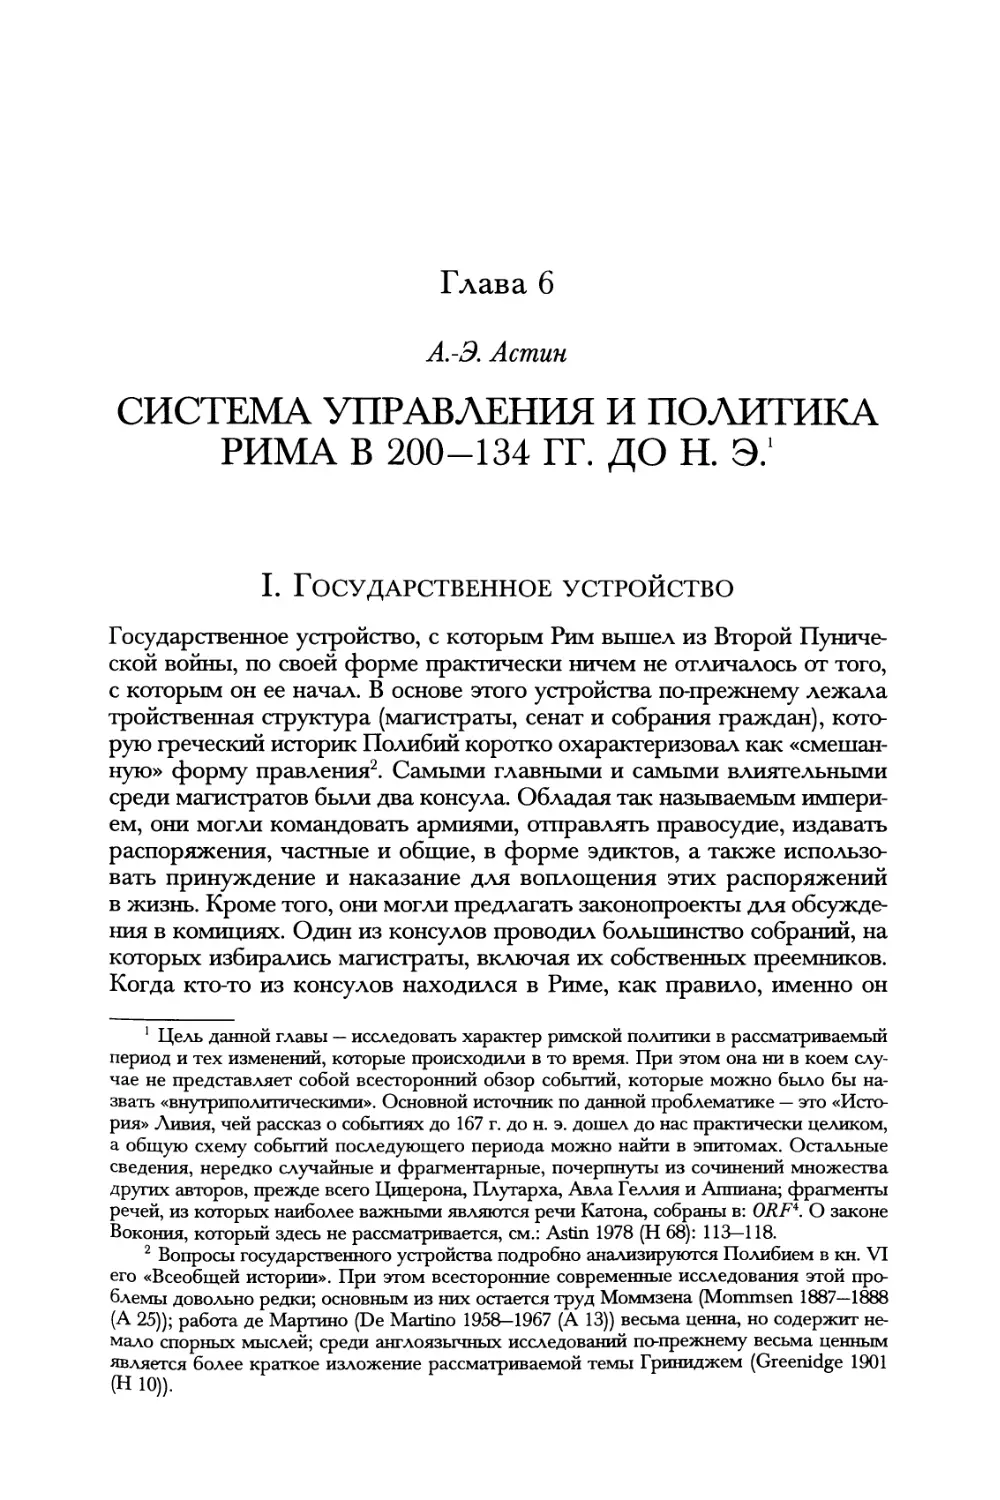 Глава 6. Система управления и политика Рима в 200—134 гг. до н. э. А.-Э. Астин